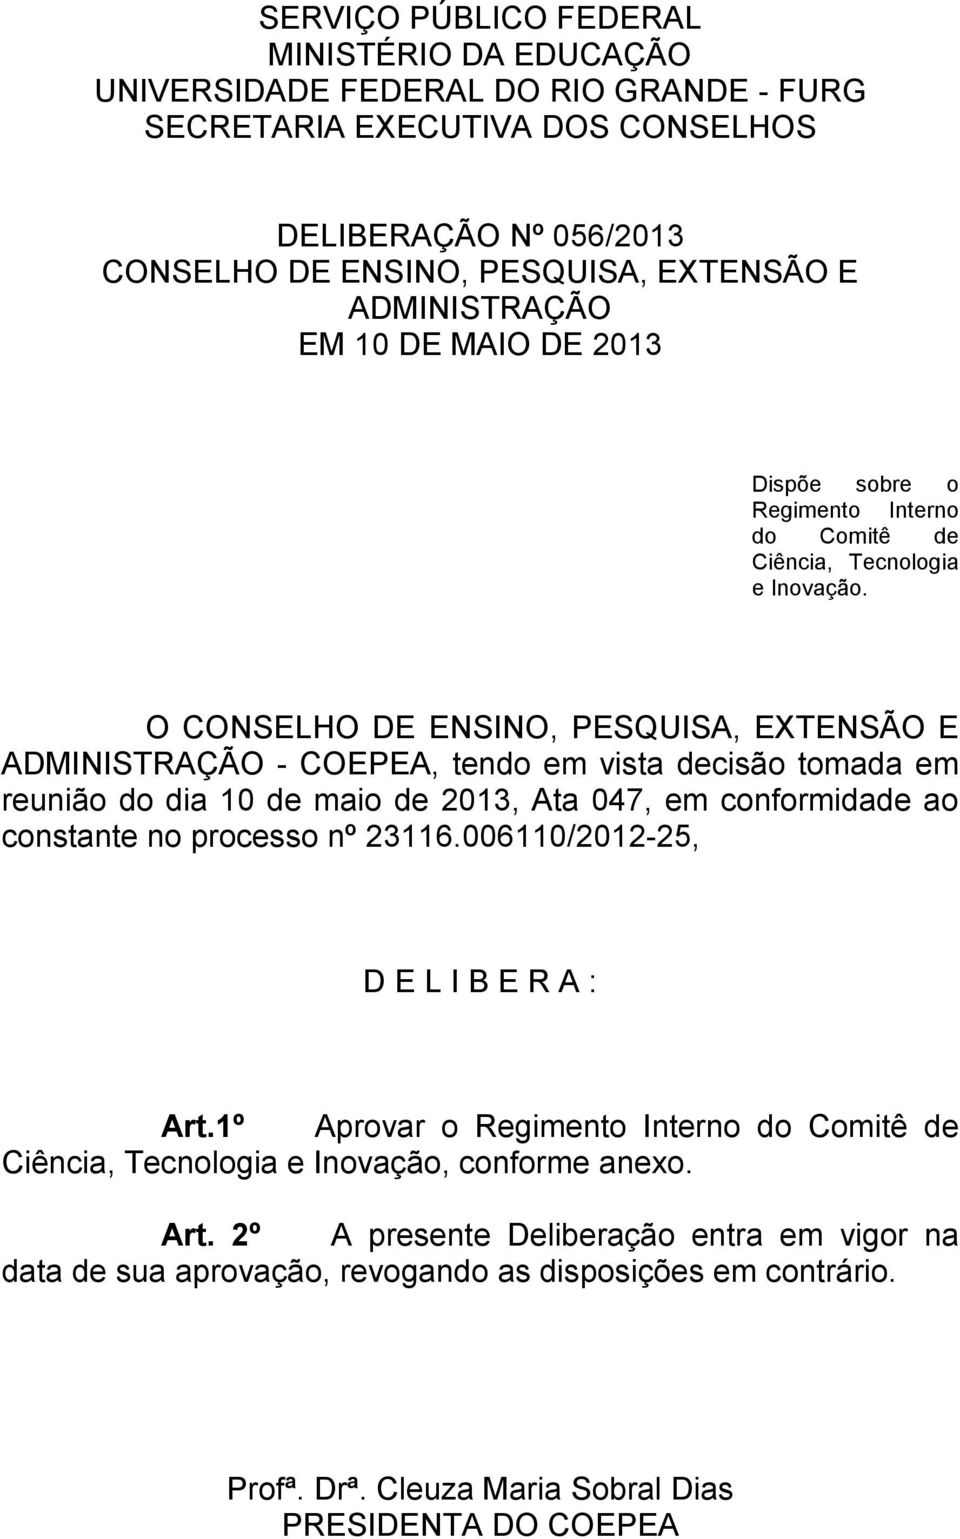 O CONSELHO DE ENSINO, PESQUISA, EXTENSÃO E ADMINISTRAÇÃO - COEPEA, tendo em vista decisão tomada em reunião do dia 10 de maio de 2013, Ata 047, em conformidade ao constante no processo nº 23116.